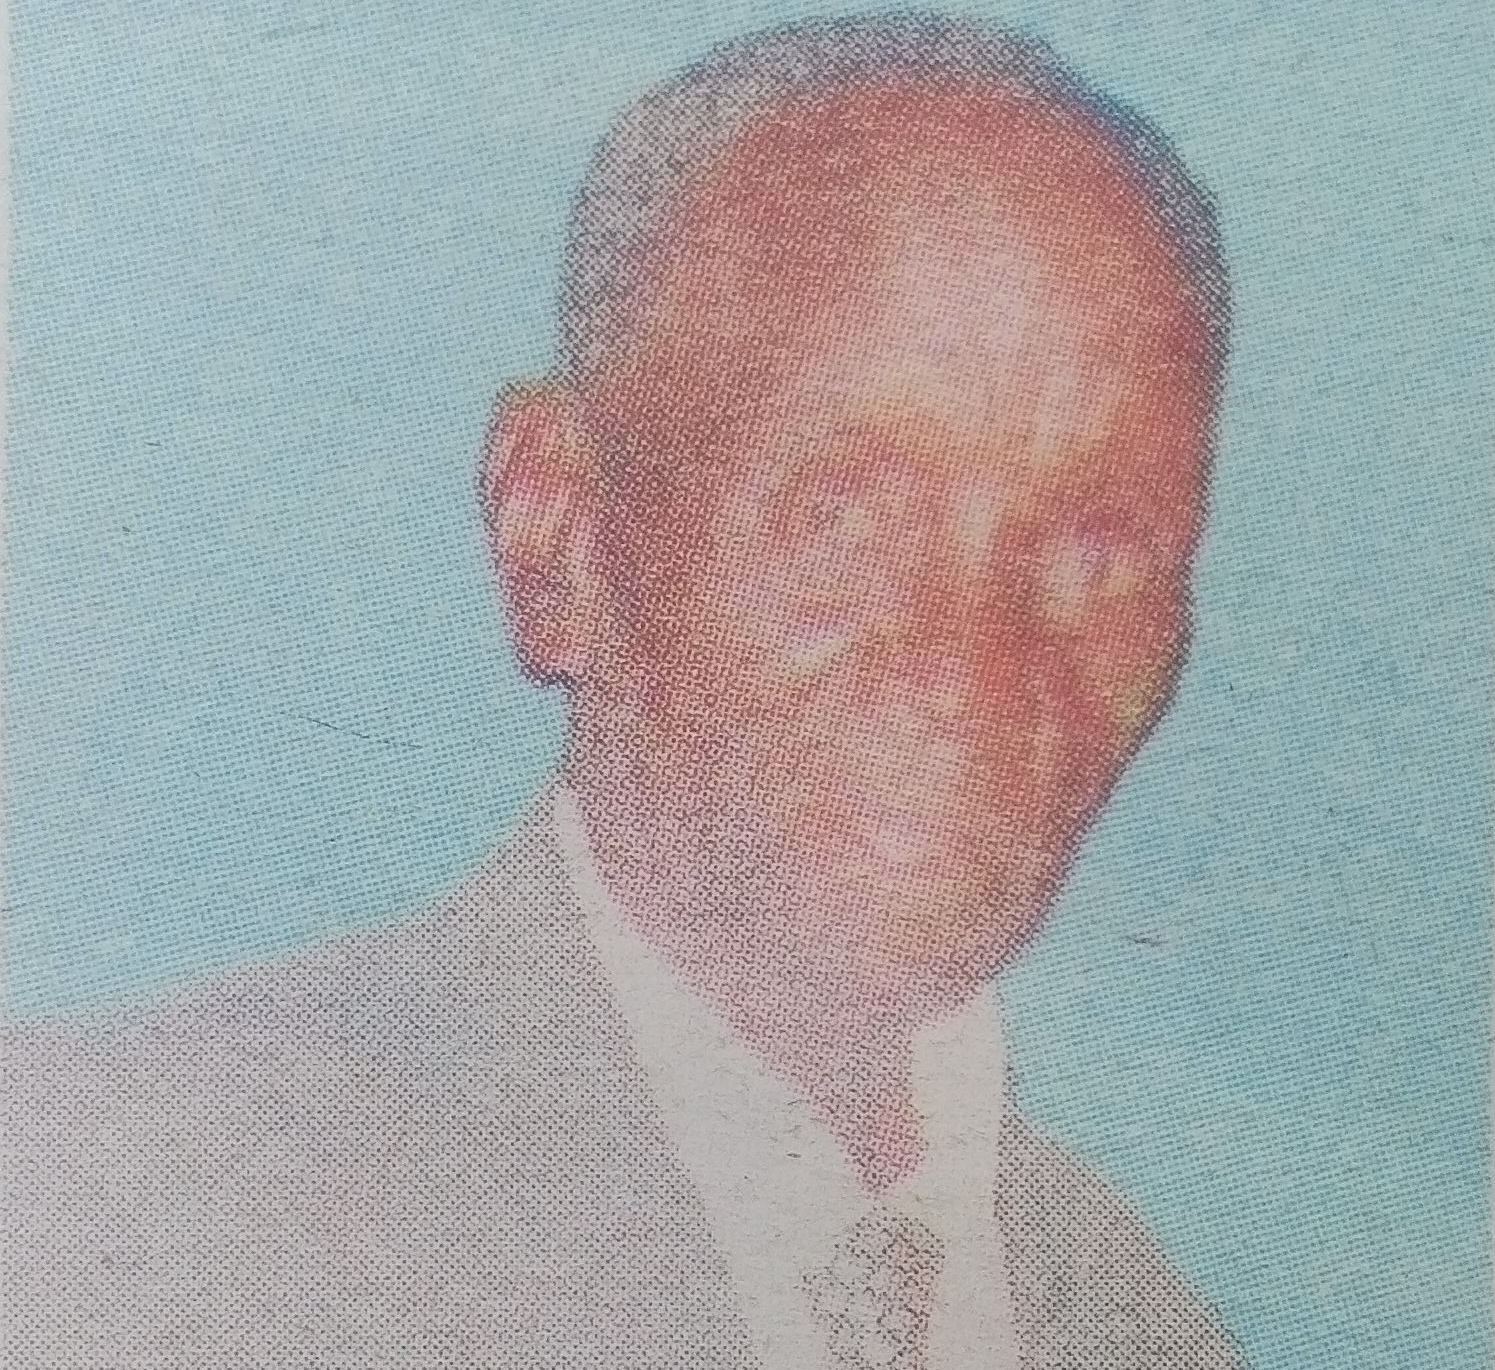 Obituary Image of John Kisumbi Musyoki